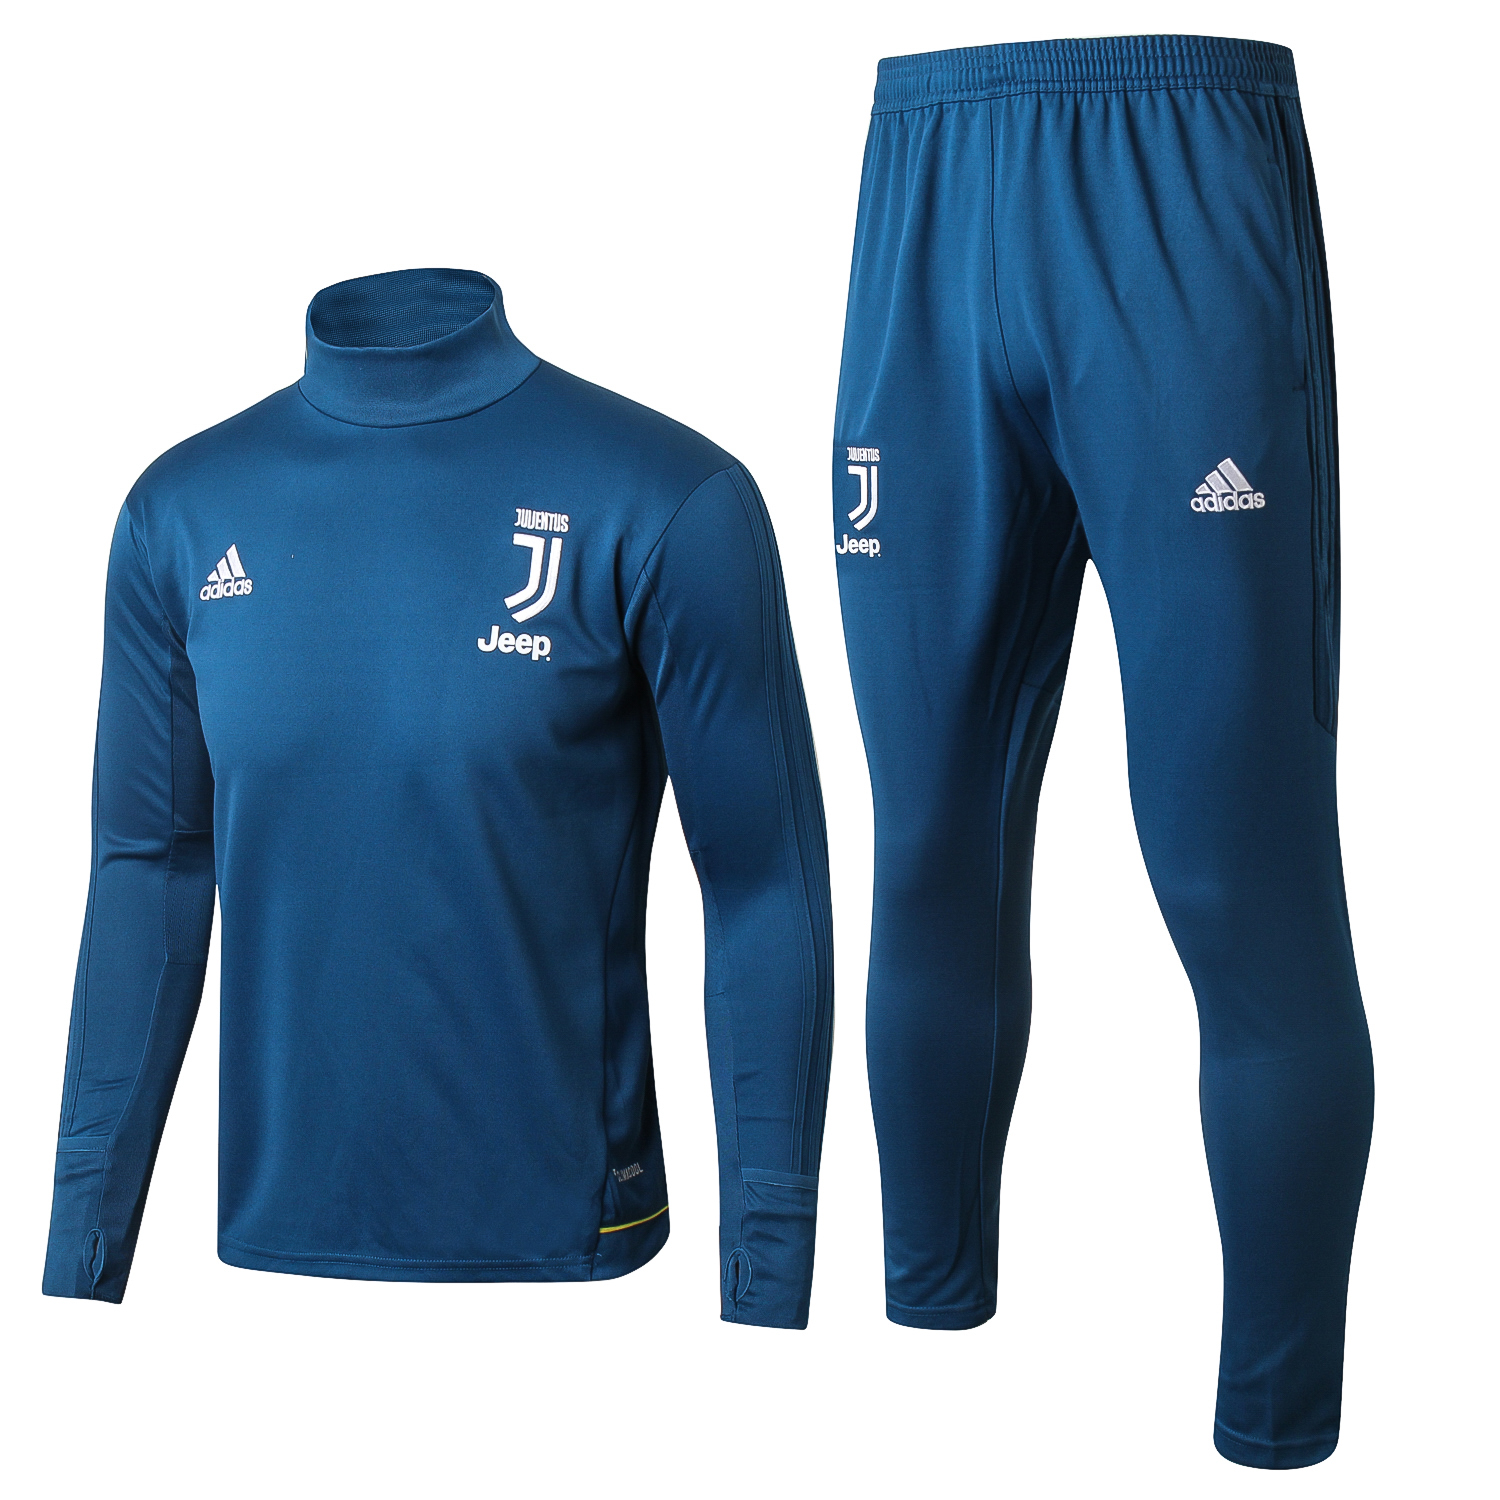 Survetement Foot Juventus 2017 2018 Bleu Marine